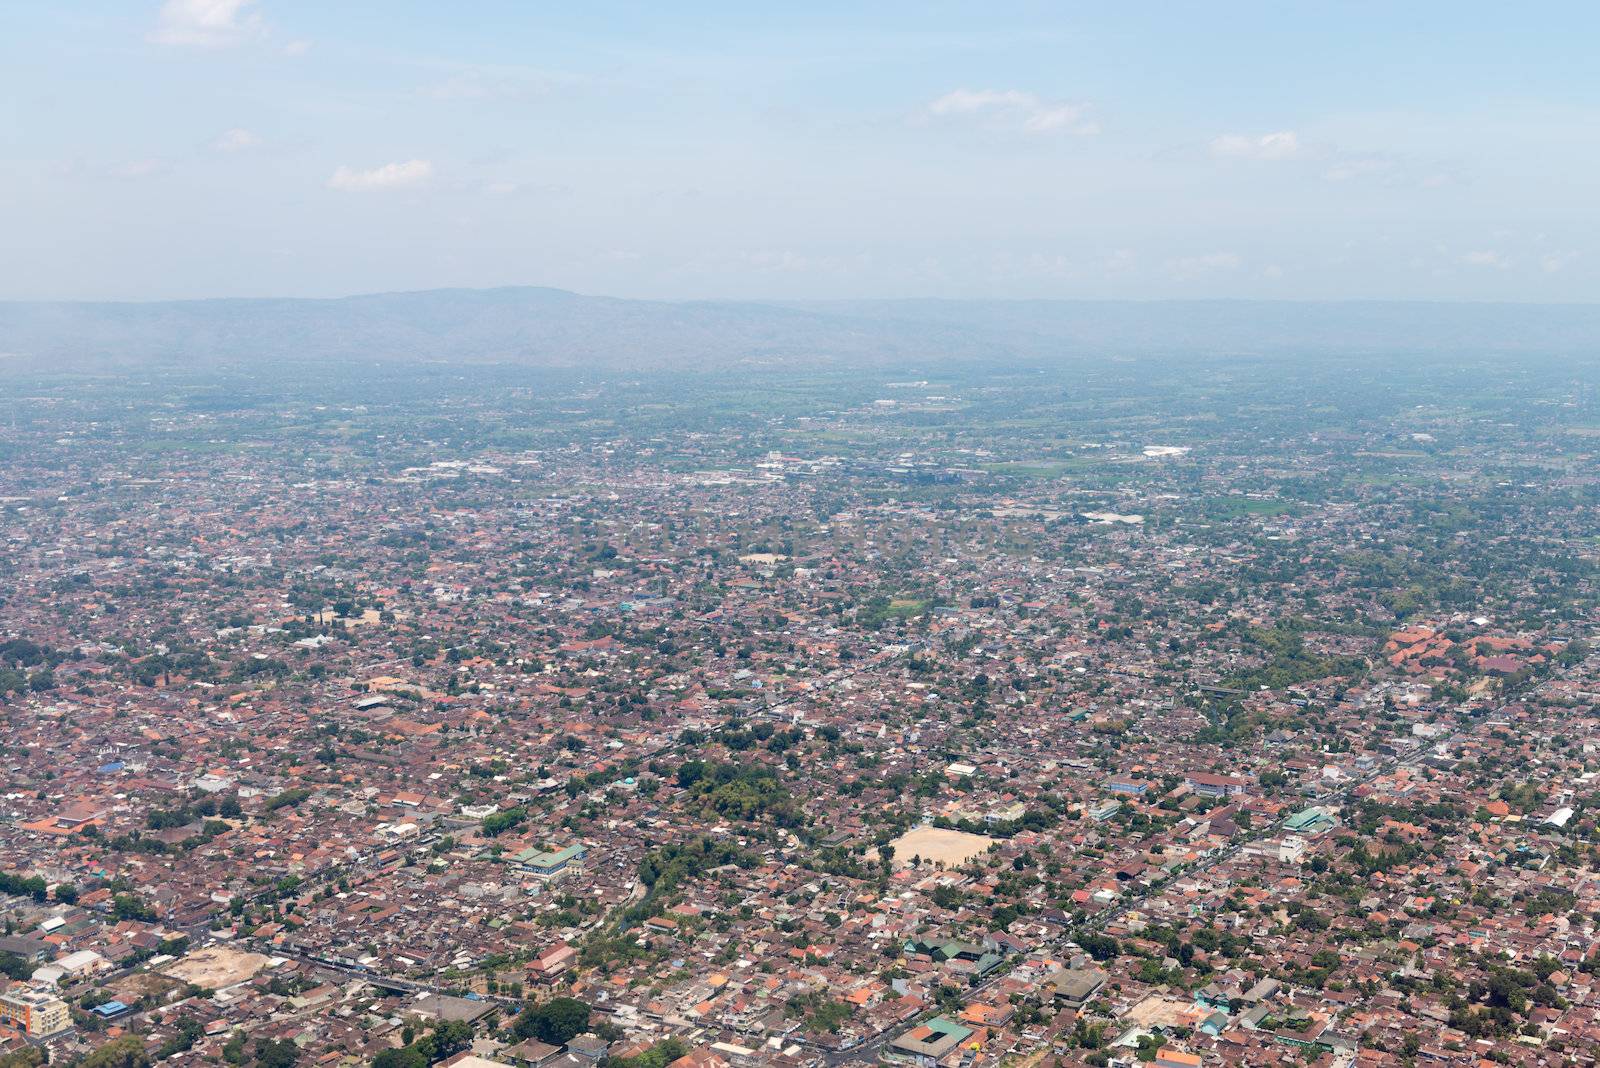 Aerial view of Yogyakarta city center, Indonesia